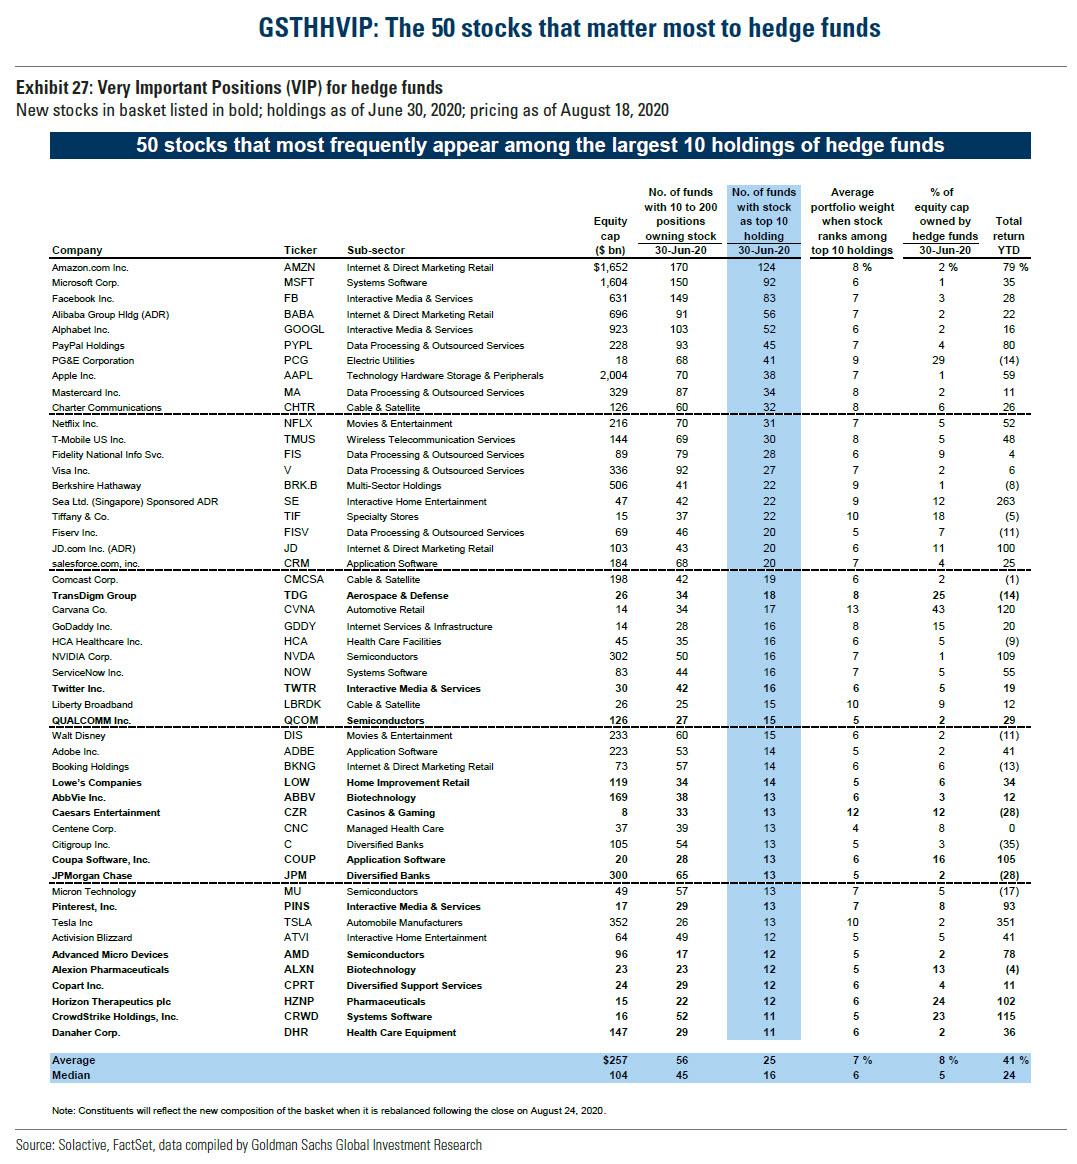 50 nejpopularnejsich akcii mezi hedge fondy ve 2Q 2020